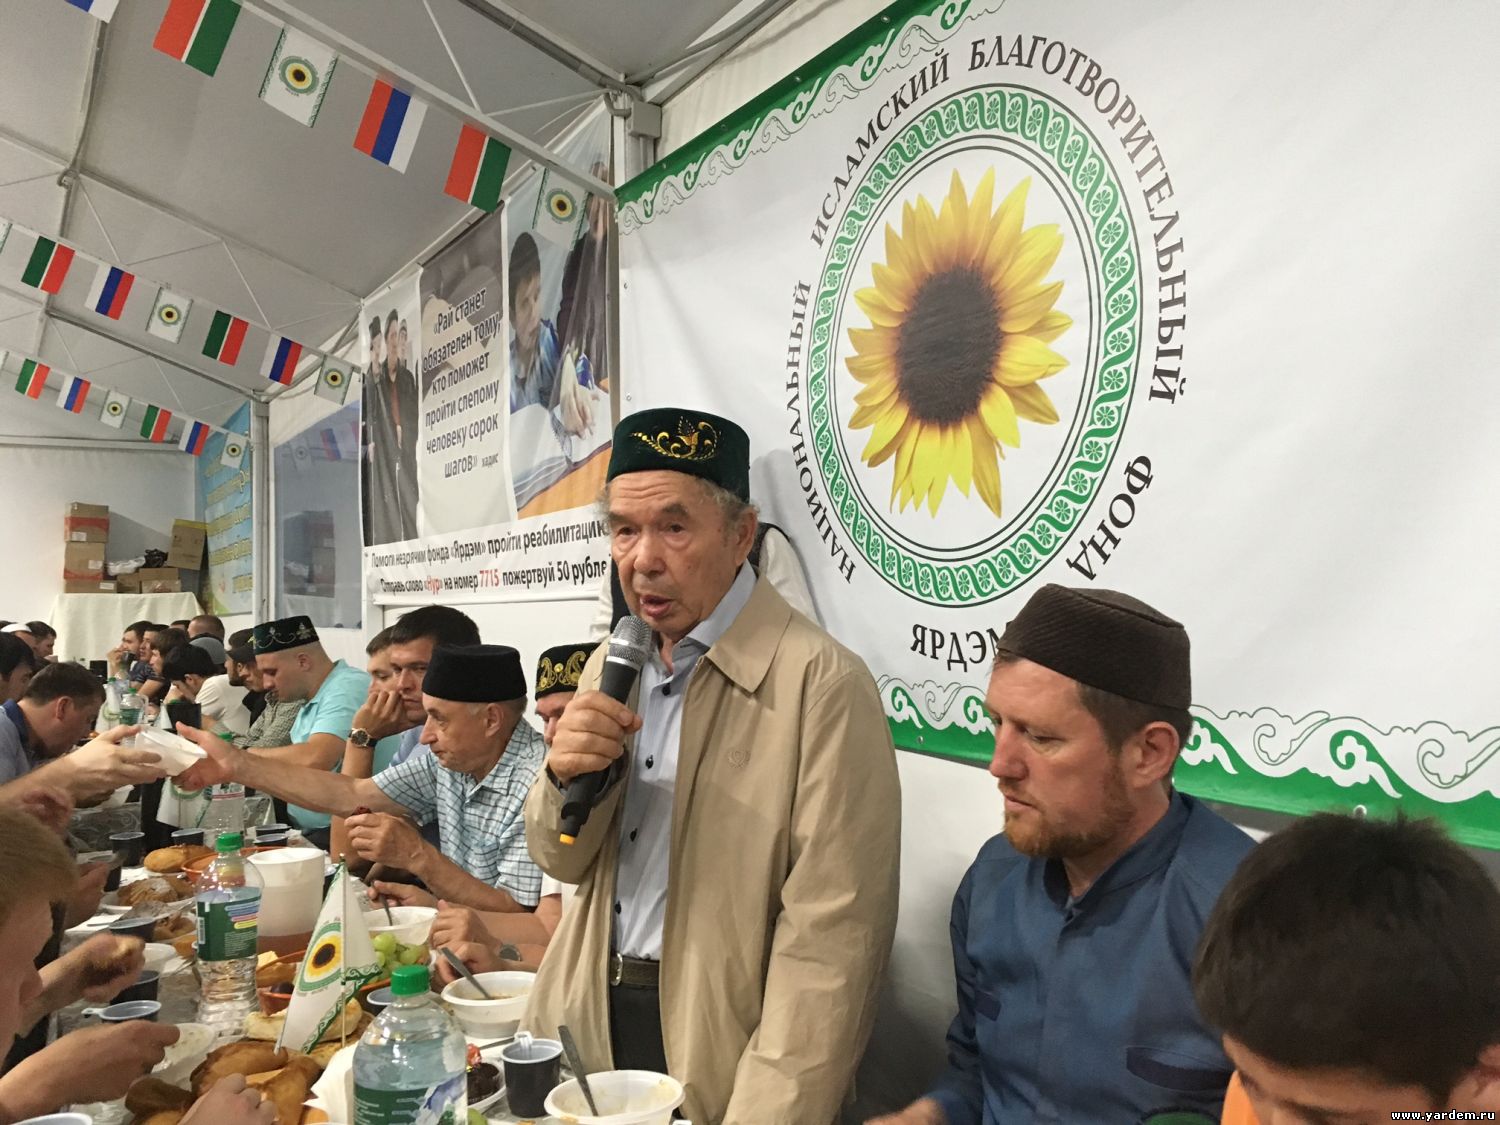 "Шатер Рамазана" мечети "Ярдэм" посетили академики Тагировы. Общие новости